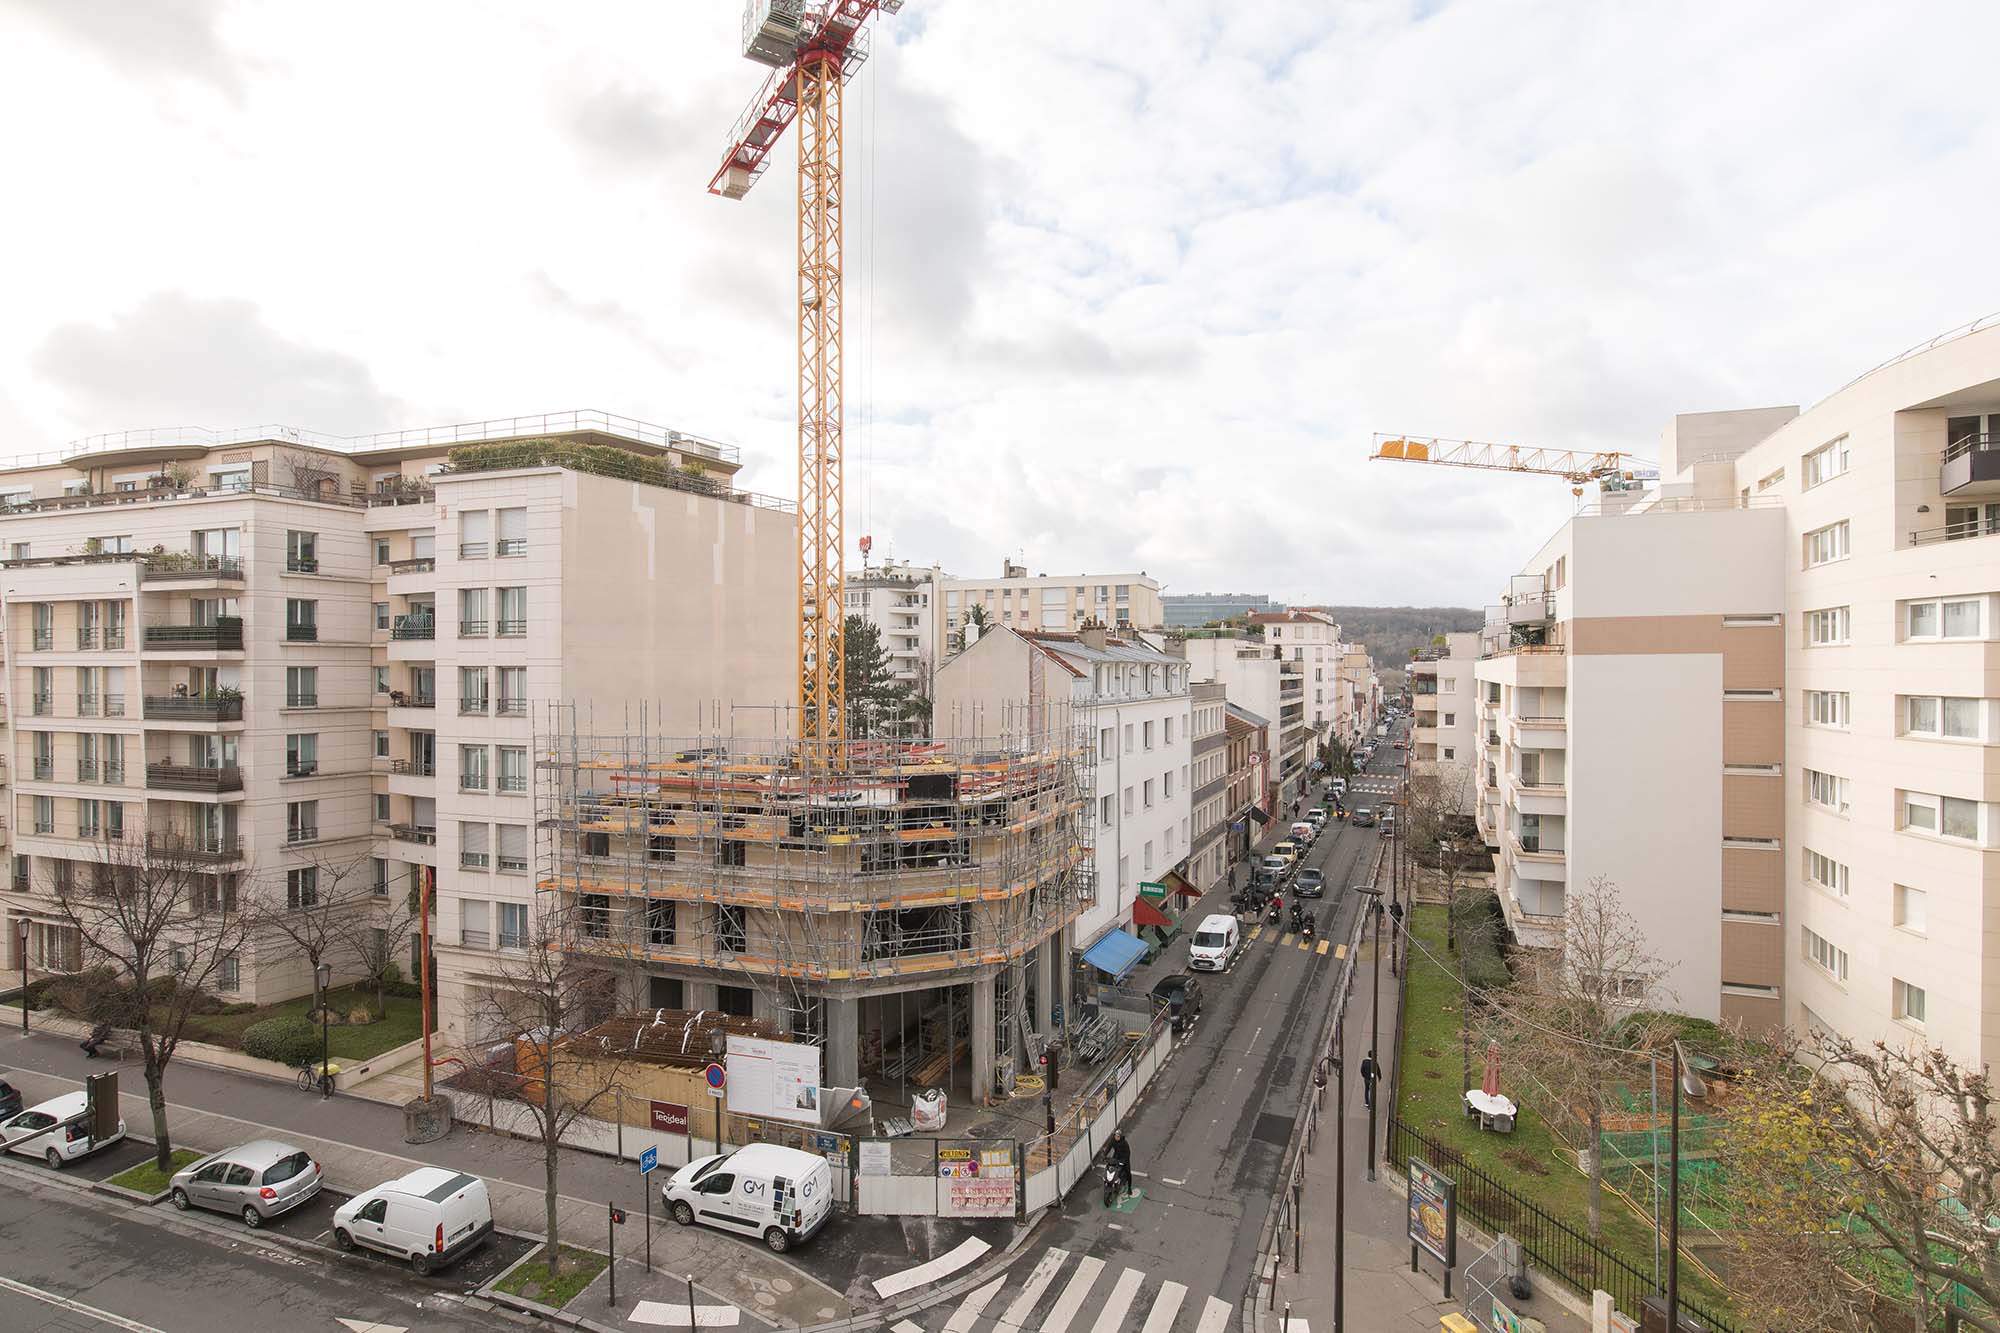 appartement Boulogne 92100 achat vente estimation